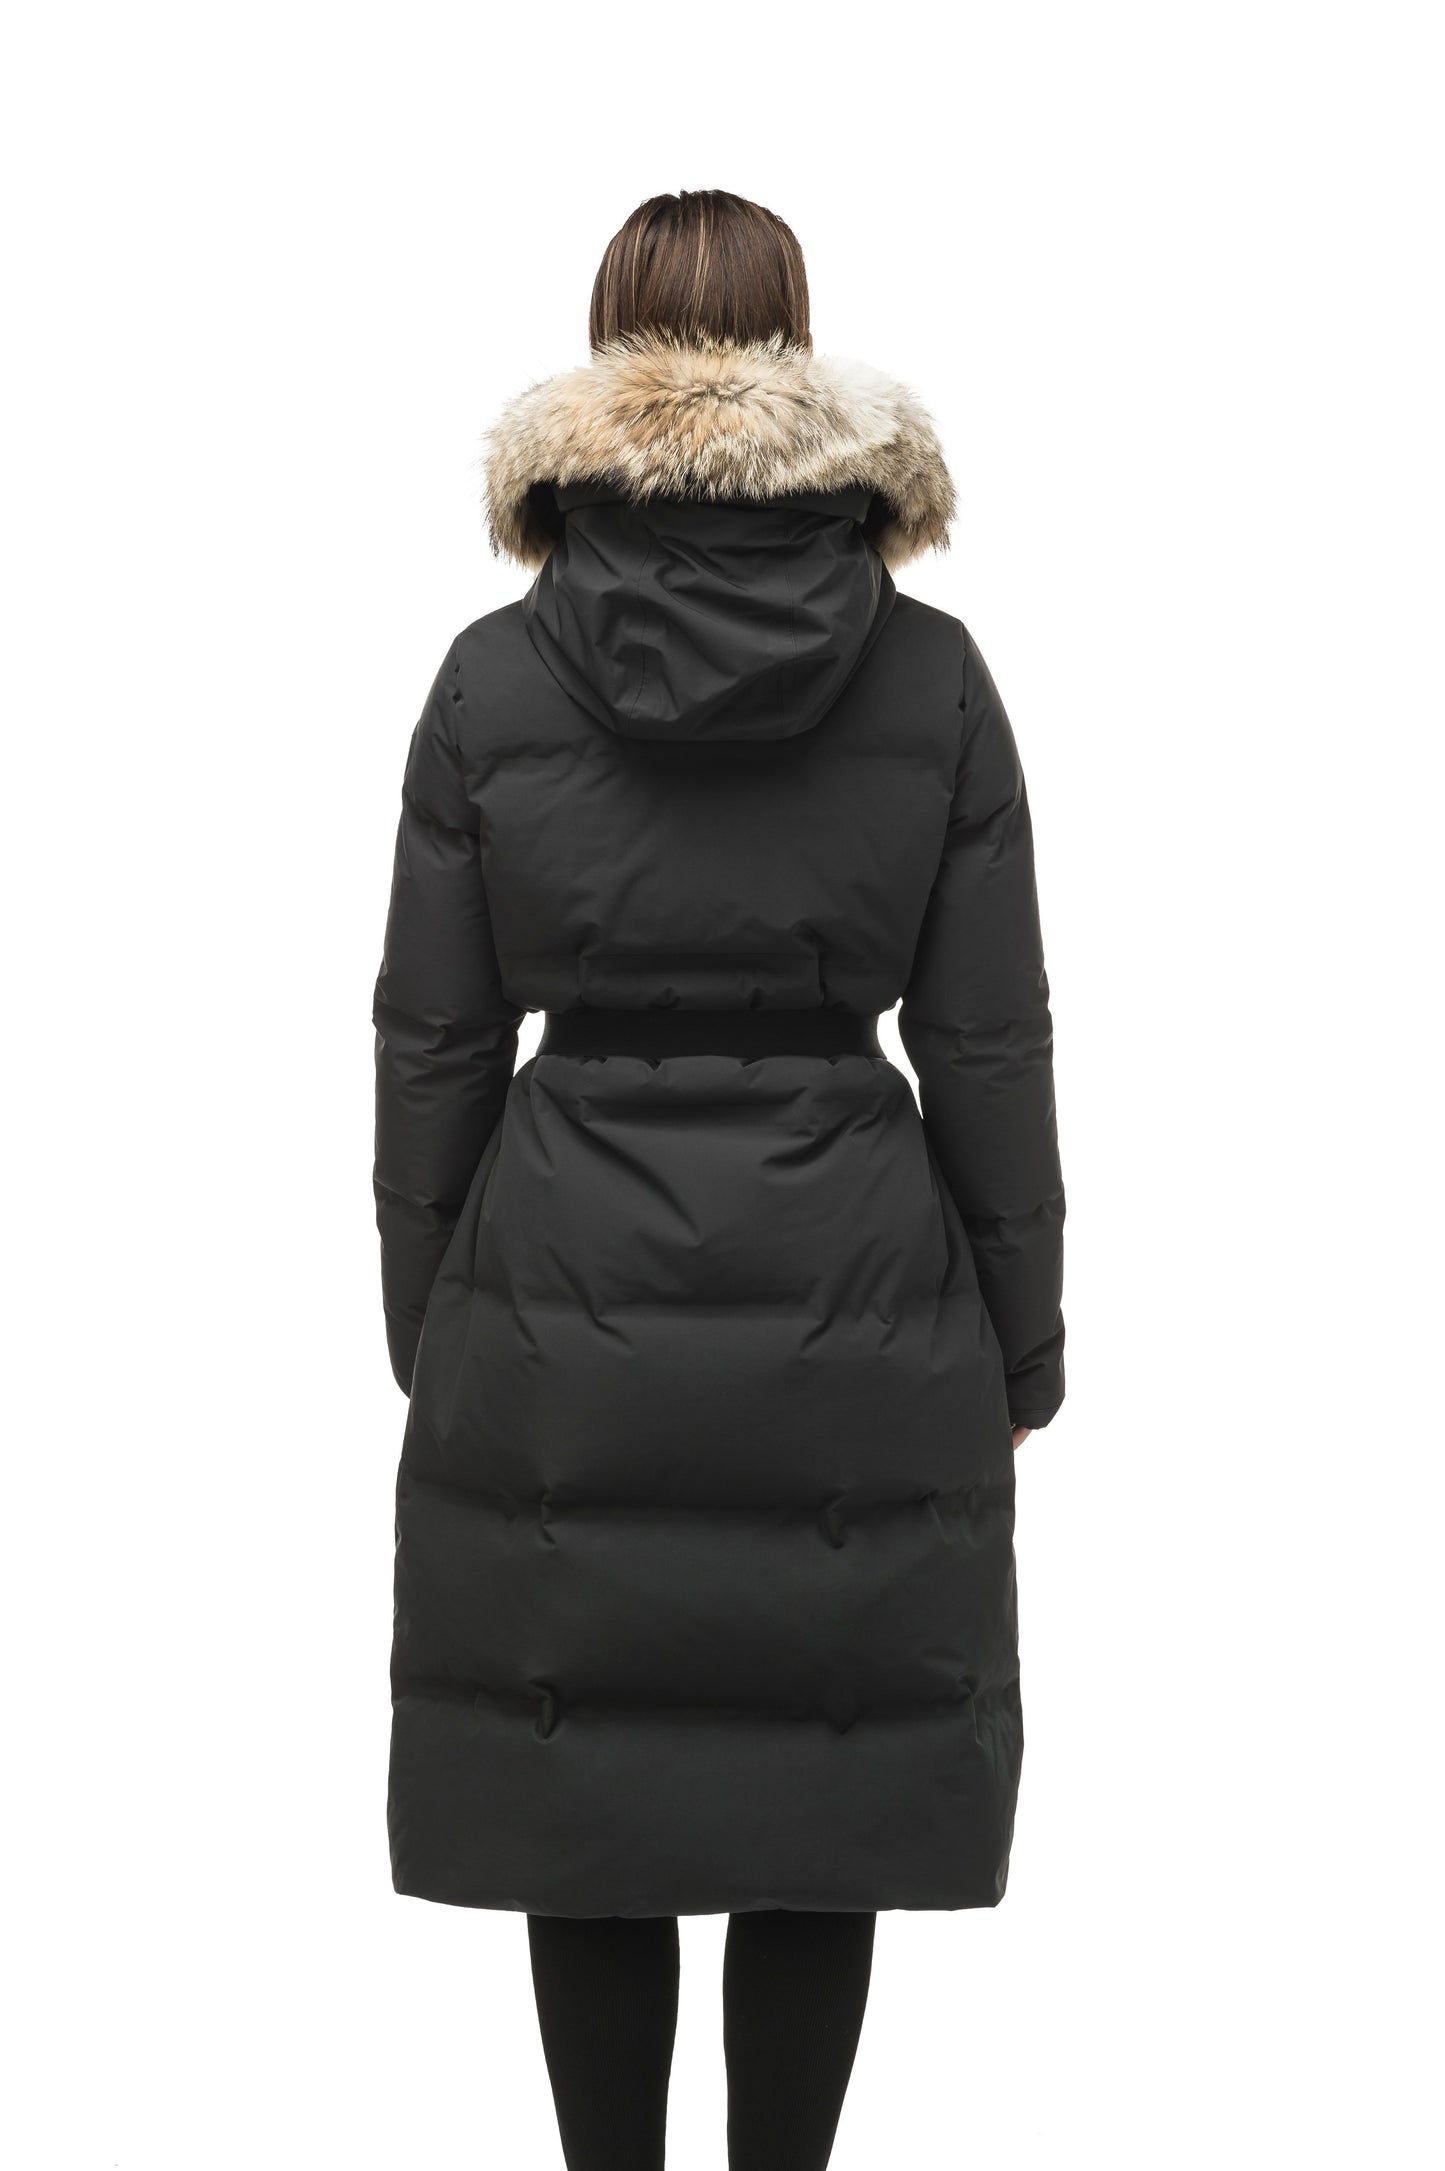 Women's ankle length puffer jacket with a minimalist modern design,ÃƒÆ’Ã†â€™ÃƒÂ¢Ã¢â€šÂ¬Ã…Â¡ÃƒÆ’Ã¢â‚¬Å¡Ãƒâ€šÃ‚Â featuring an exposed zipper, and seamless puffer channels in Black